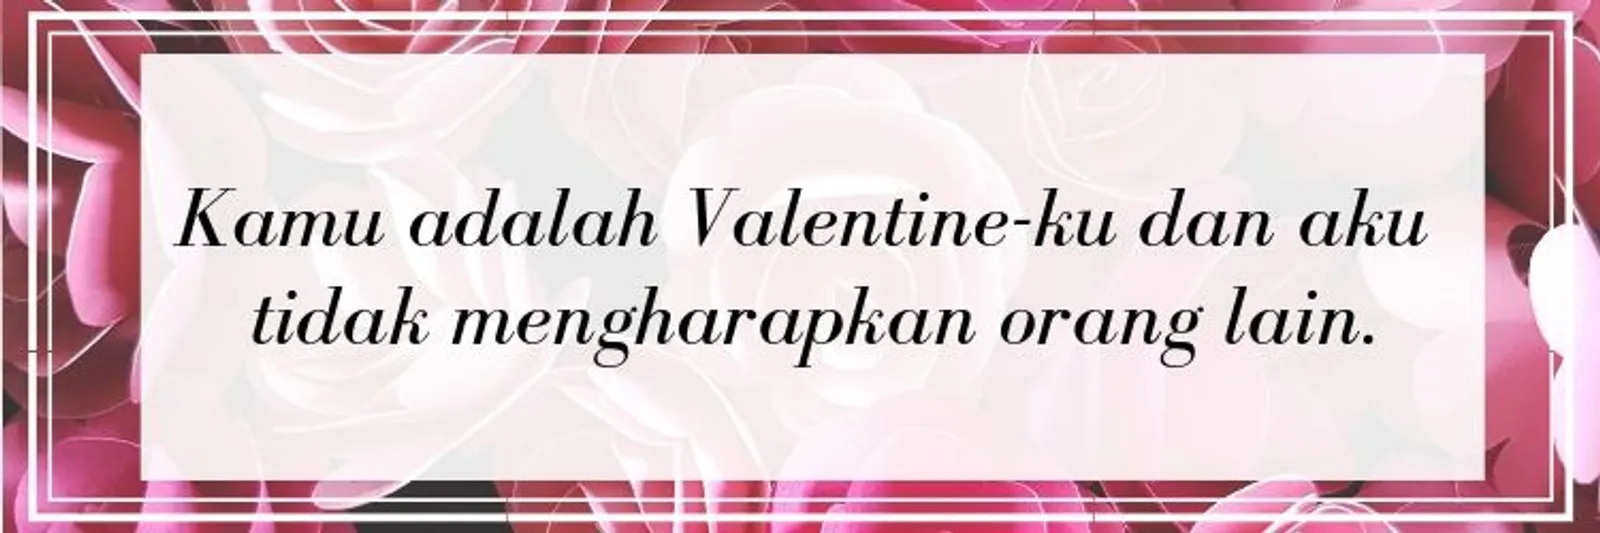 Kirim 21 Ucapan Valentine Super Romantis untuk Pasanganmu